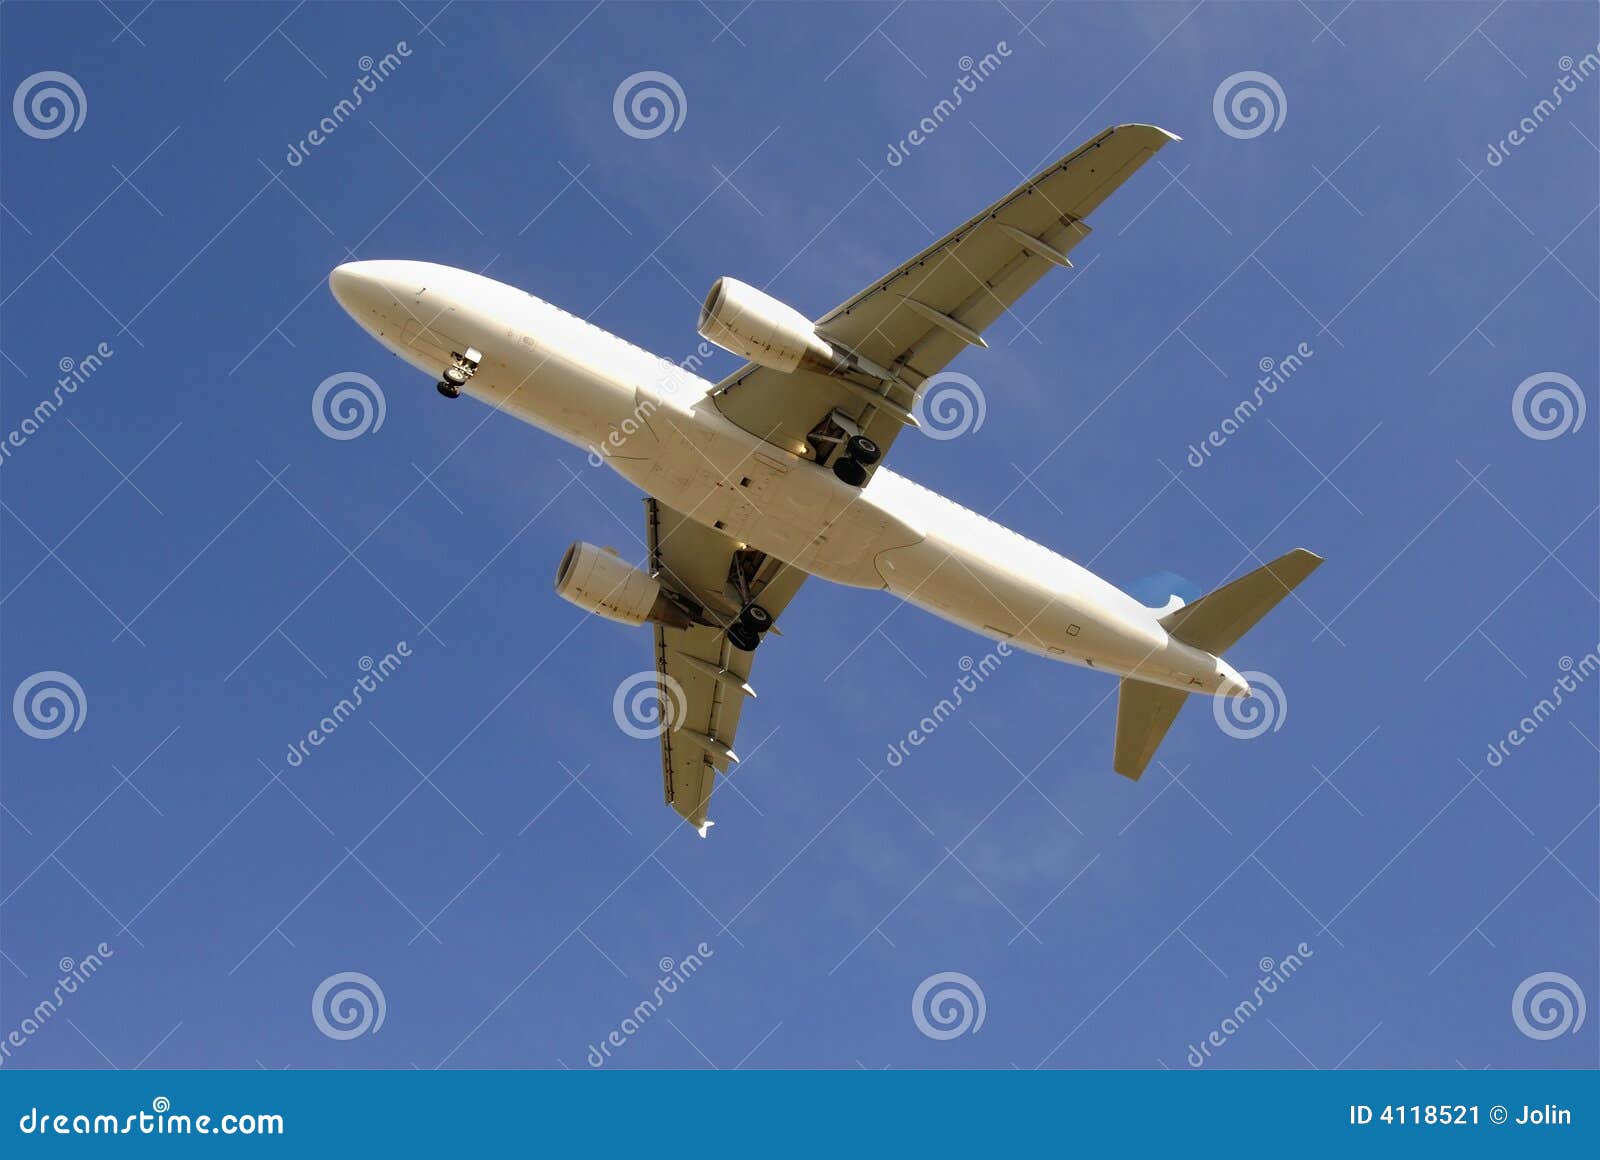 passenger jetliner taking off